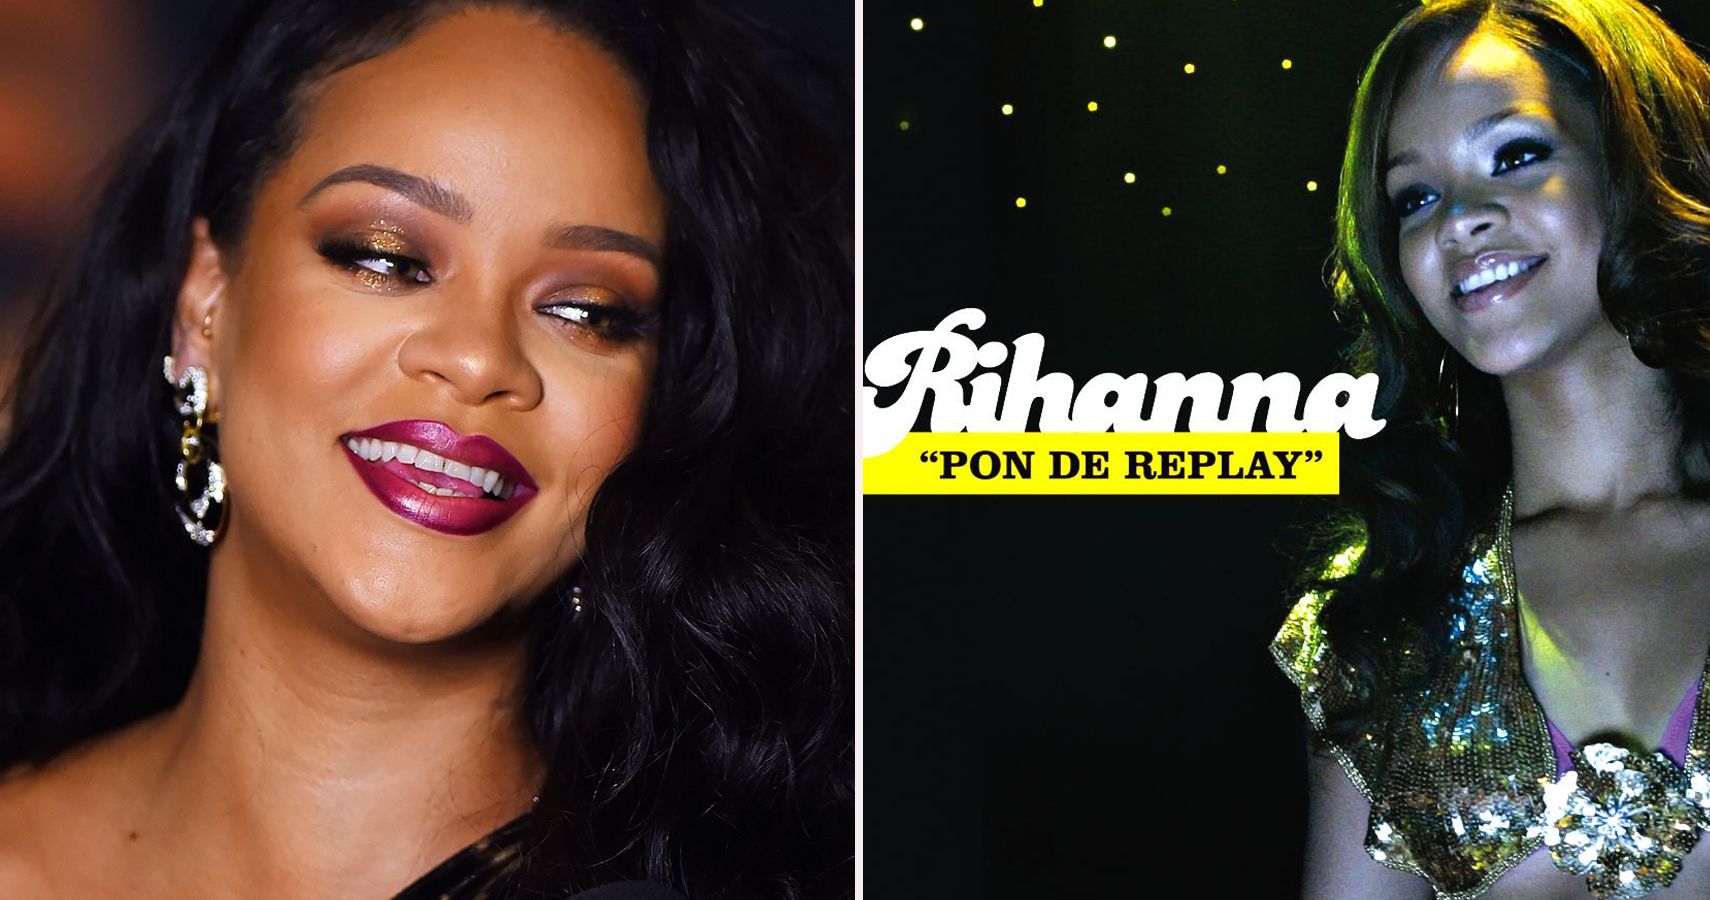 Rihanna relembra suas realizações, completa 15 anos na música